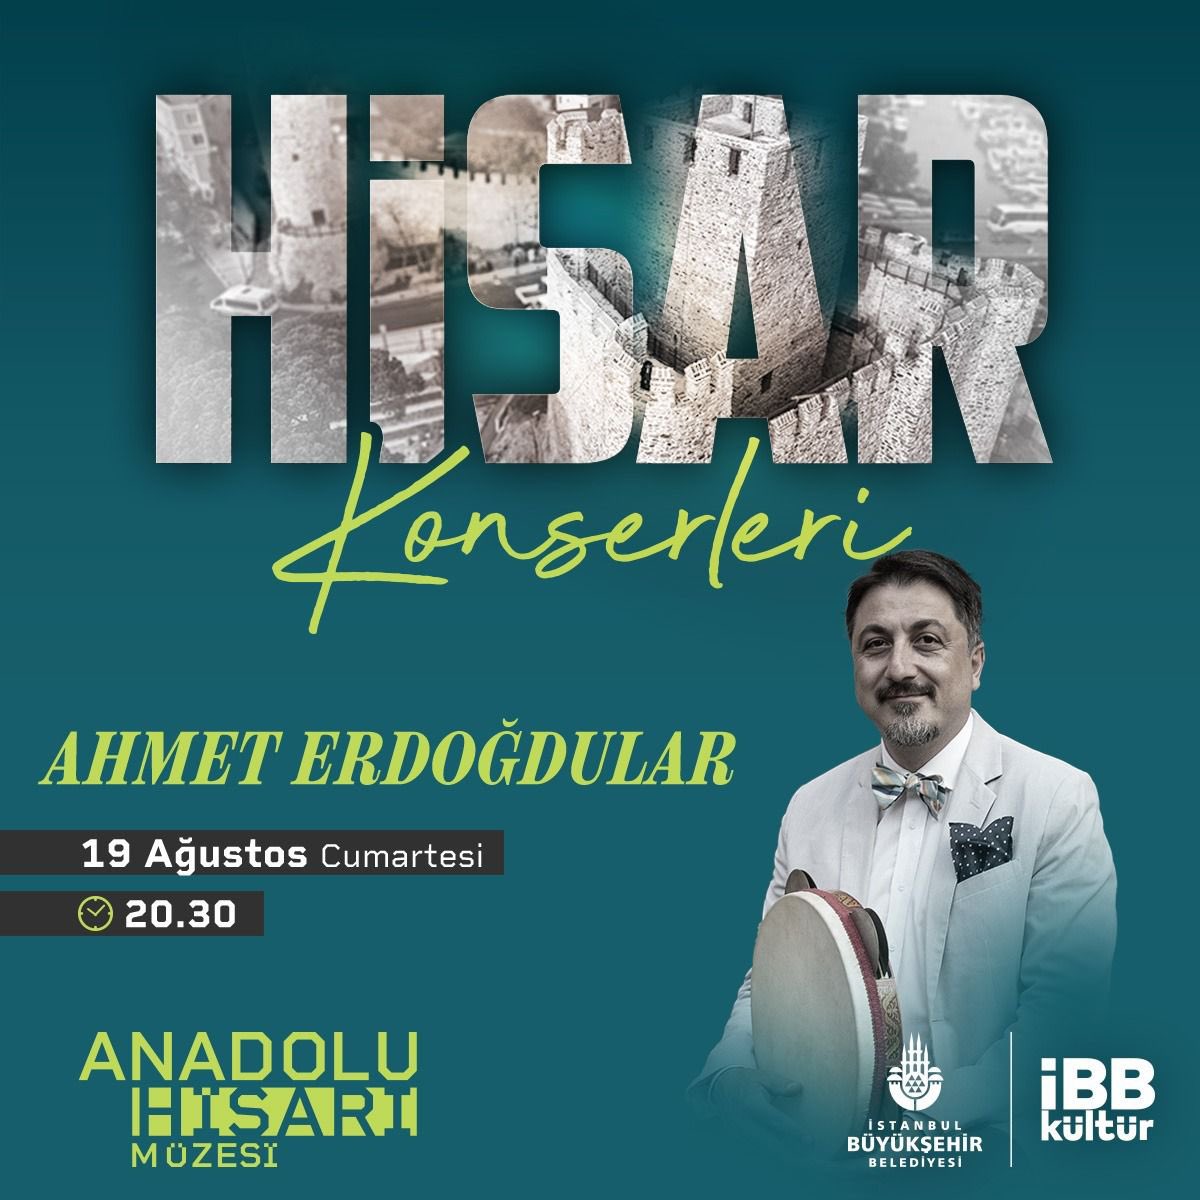 İBB Kültür girişimiyle Derya Turkan (kemençe), Murat Aydemir (tanbur) Serkan Kamacı nin (ney) refakat edecekleri konserimize tüm müzikseverleri bekliyoruz.

Etkinlik ücretsizdir.

#istanbul #music #Ottomanmusic #Turkishmusic #classiccalmusic #hisarkonserleri